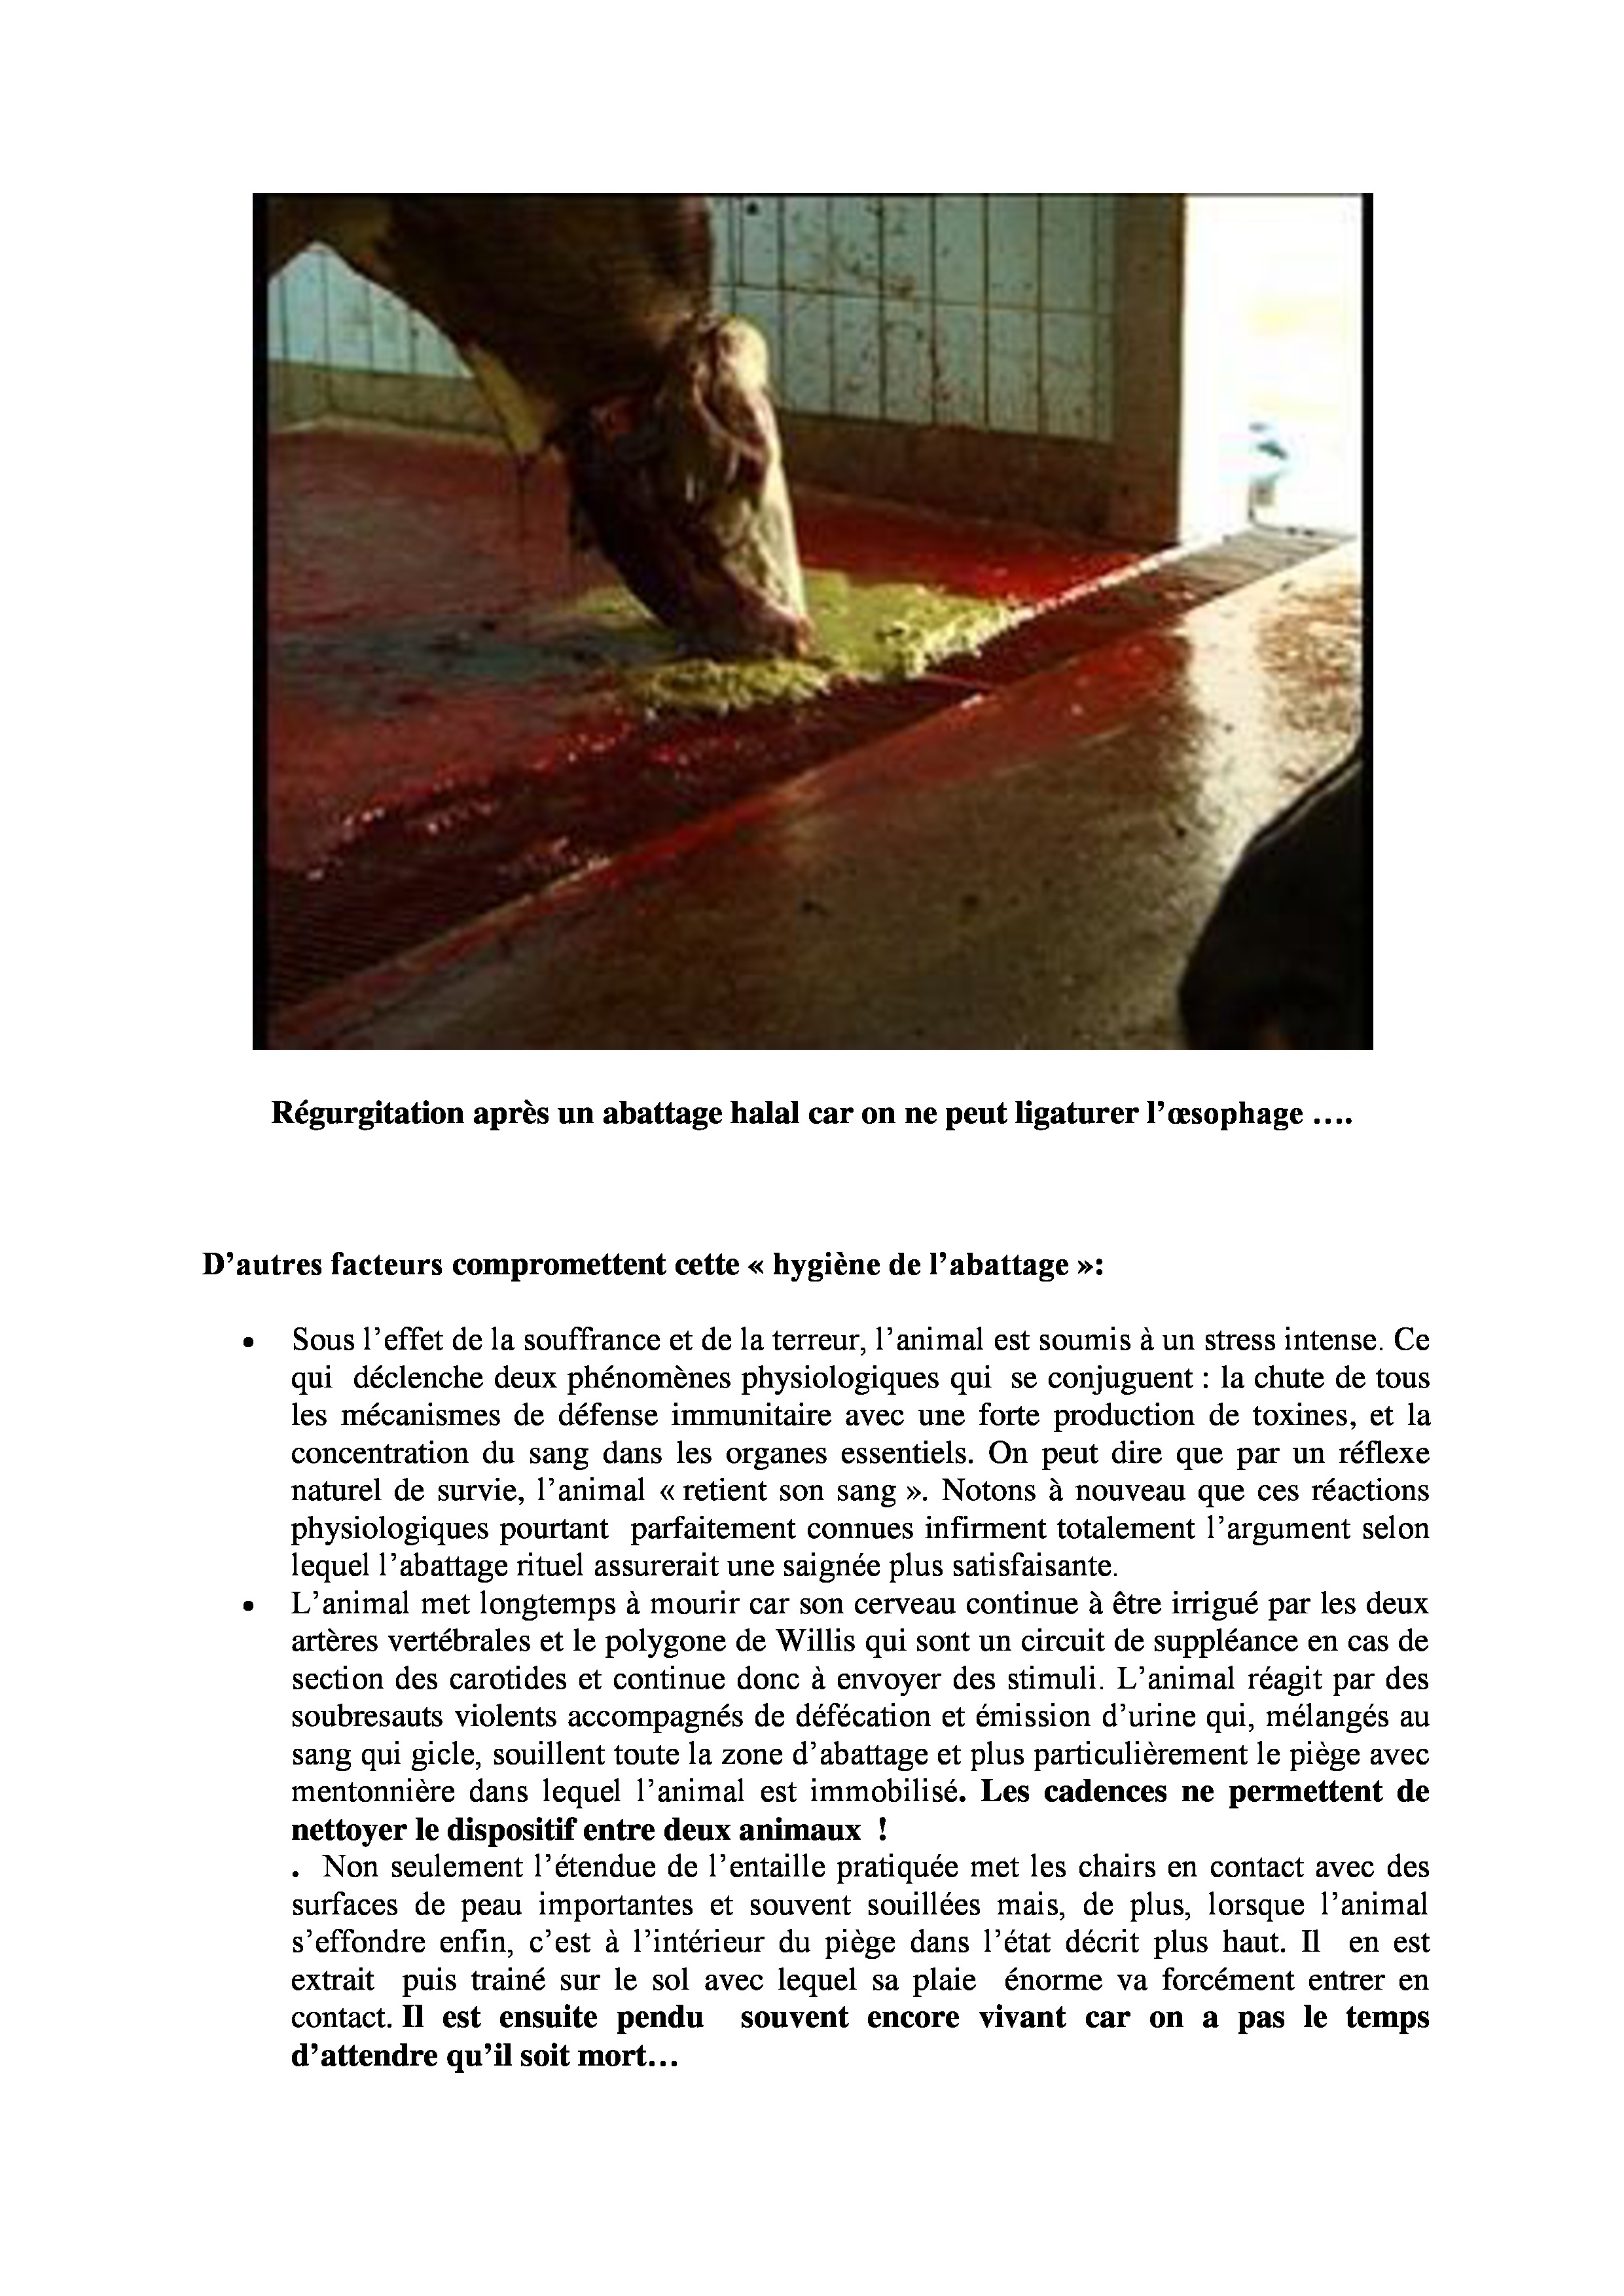 Les-risques-sanitaires-liés-à-labattage-halal-1-page-2